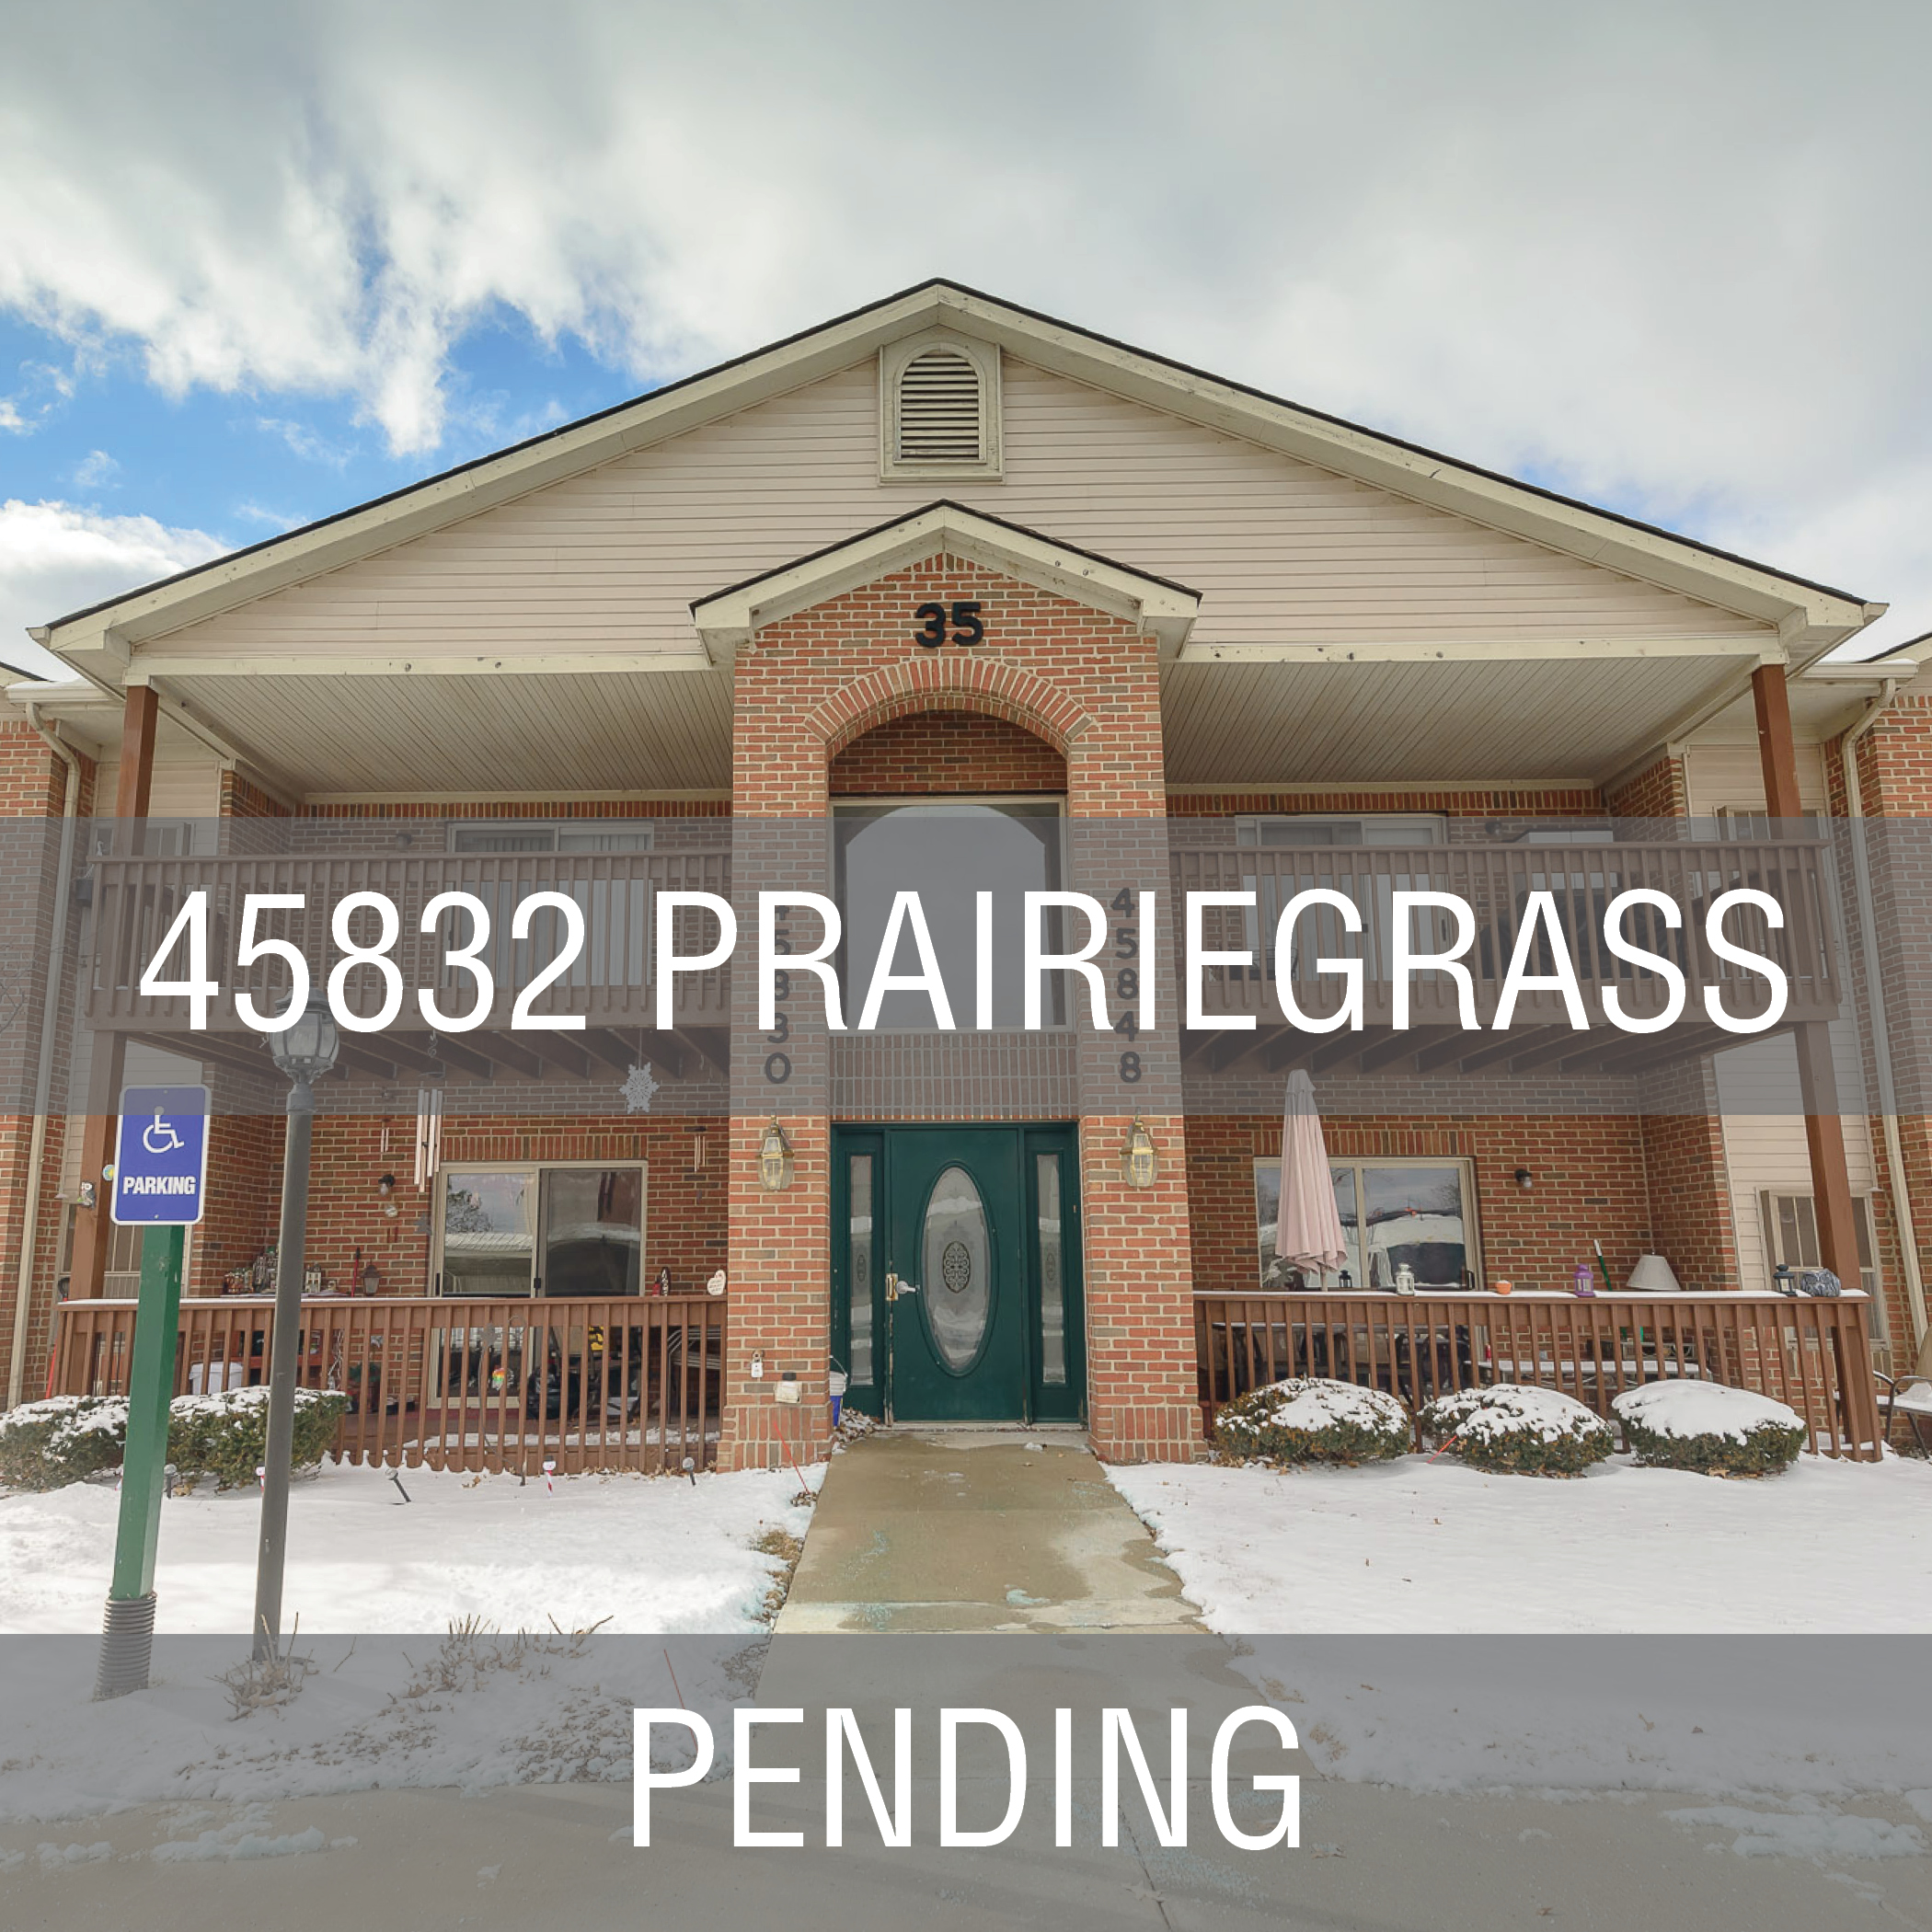 Prairiegrass45832_WebCover-pending.jpg